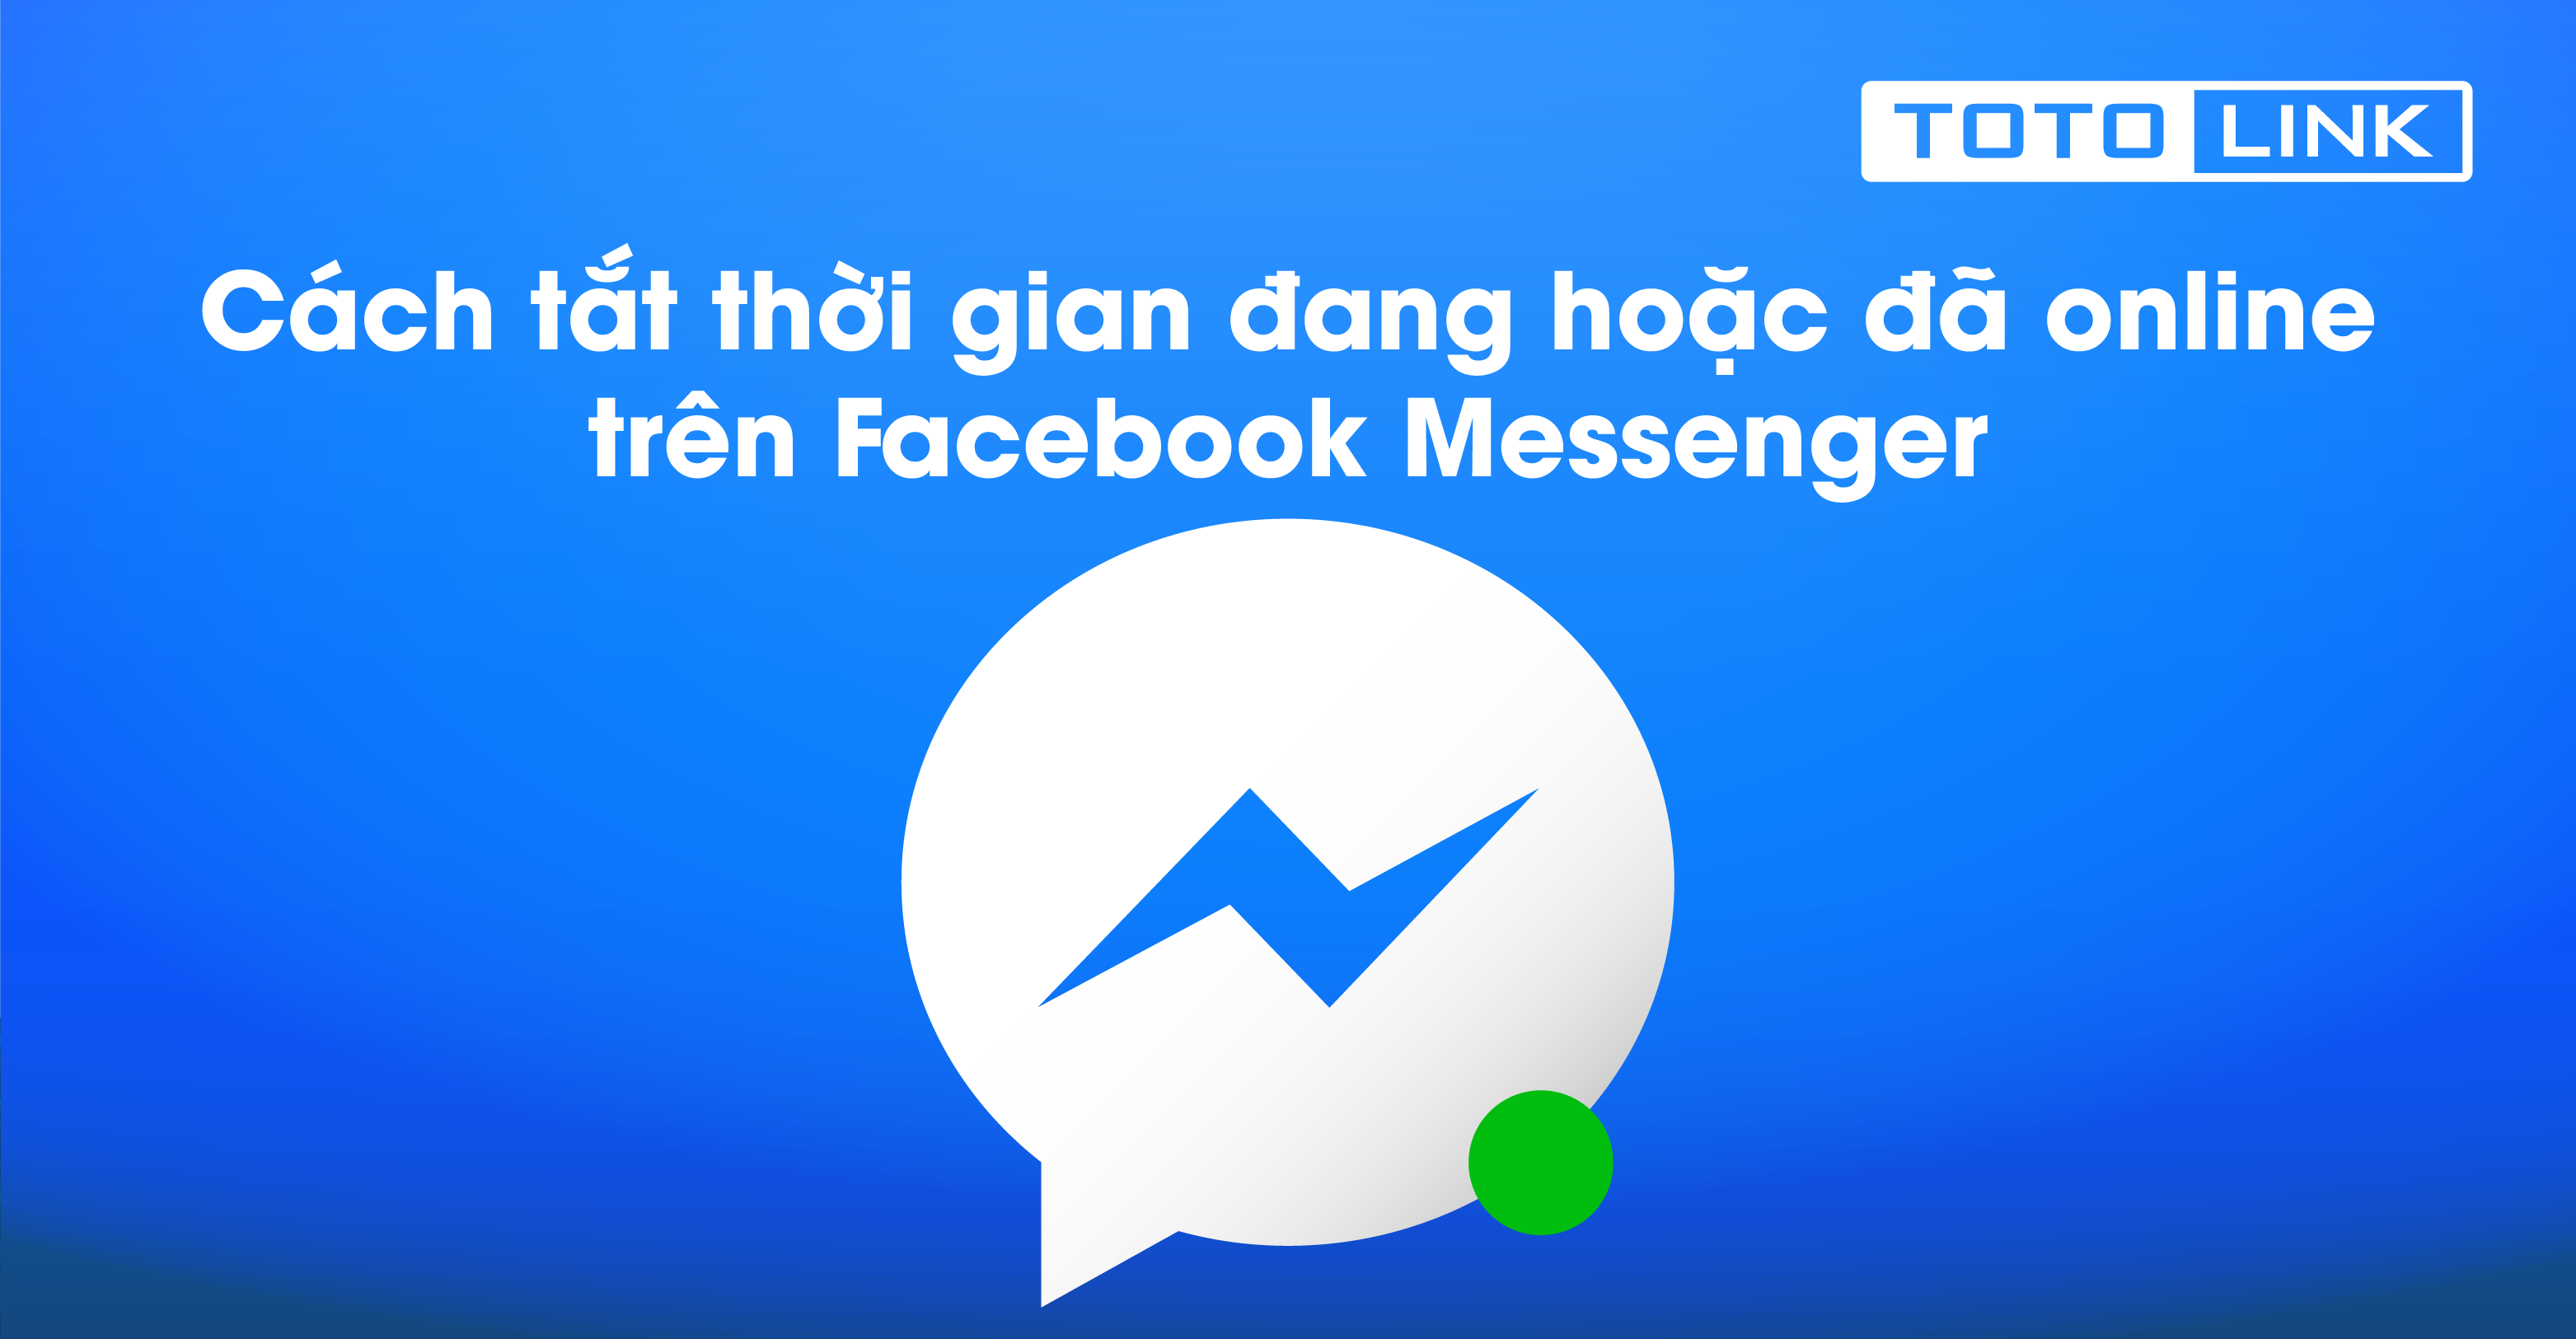 Hướng dẫn cách tắt thời gian đang hoặc đã online trên Facebook Messenger